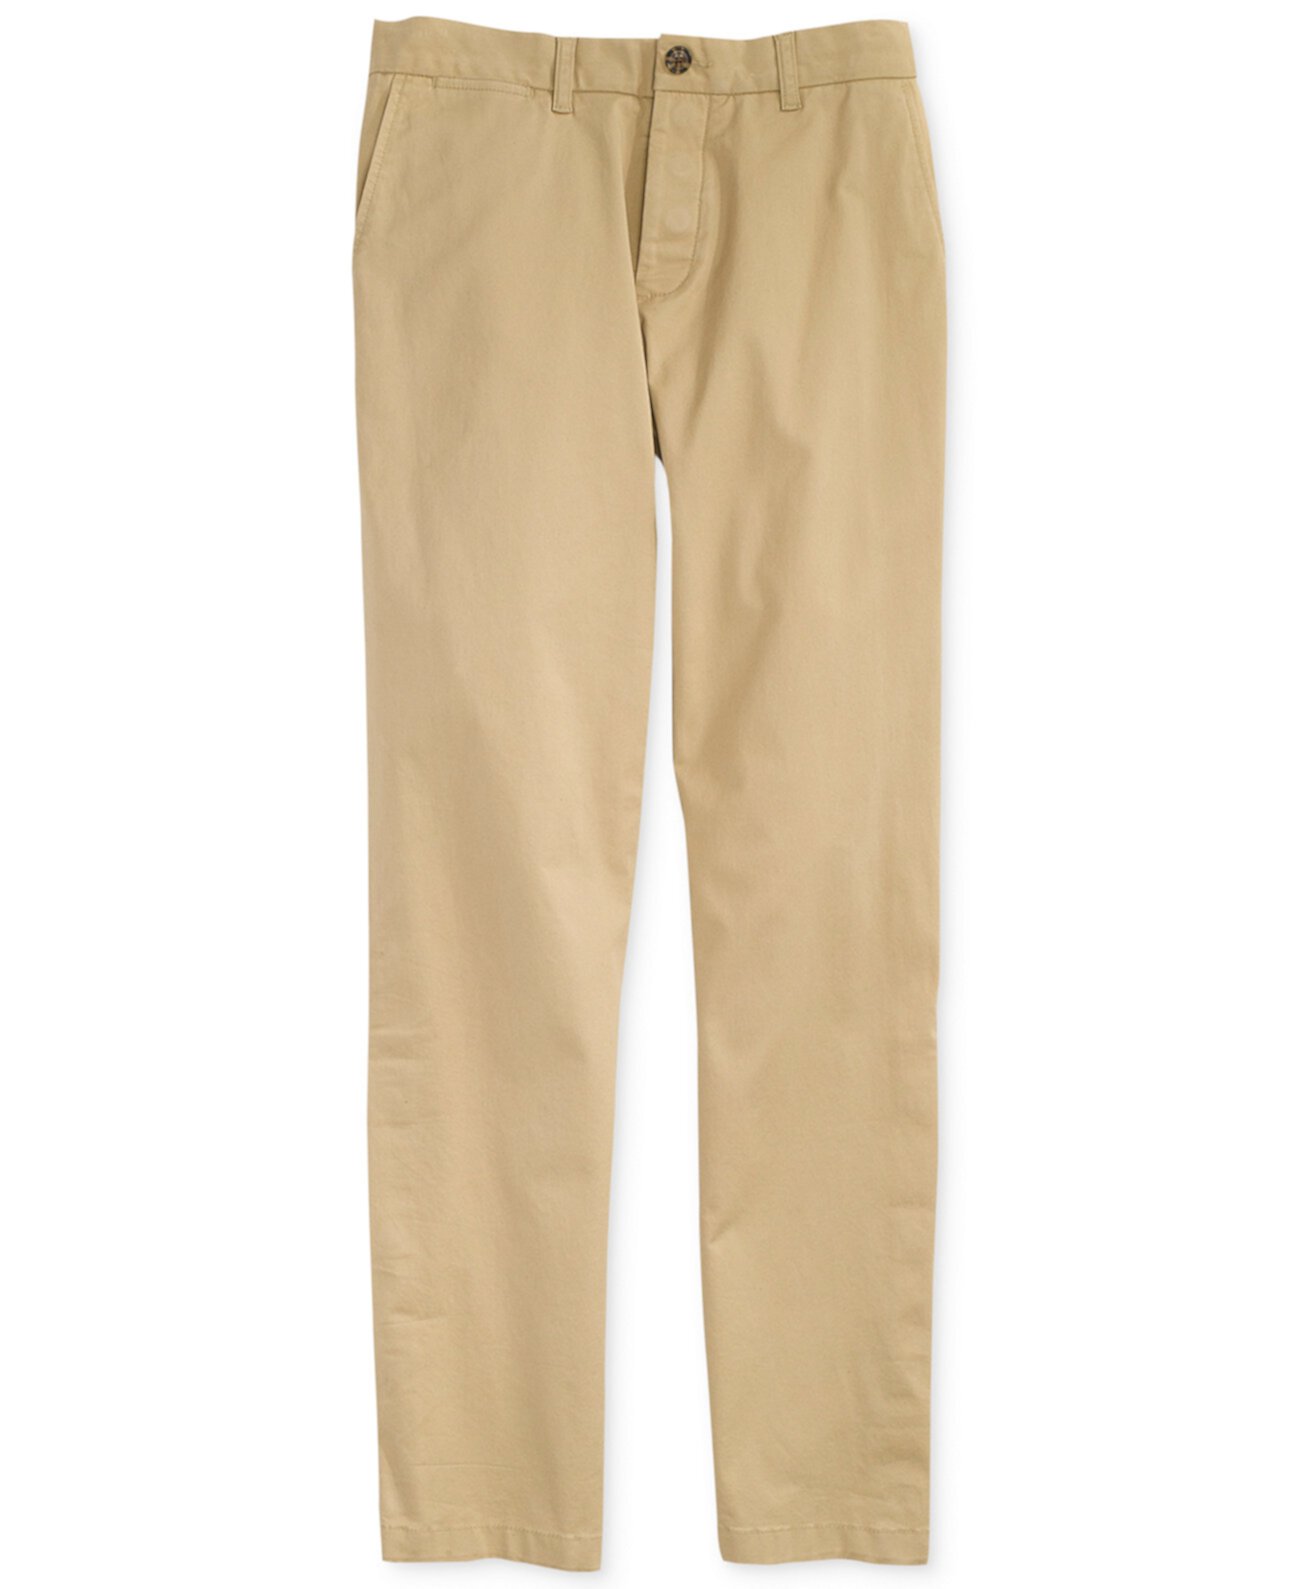 Мужские брюки чинос на заказ с магнитной застежкой-молнией Tommy Hilfiger